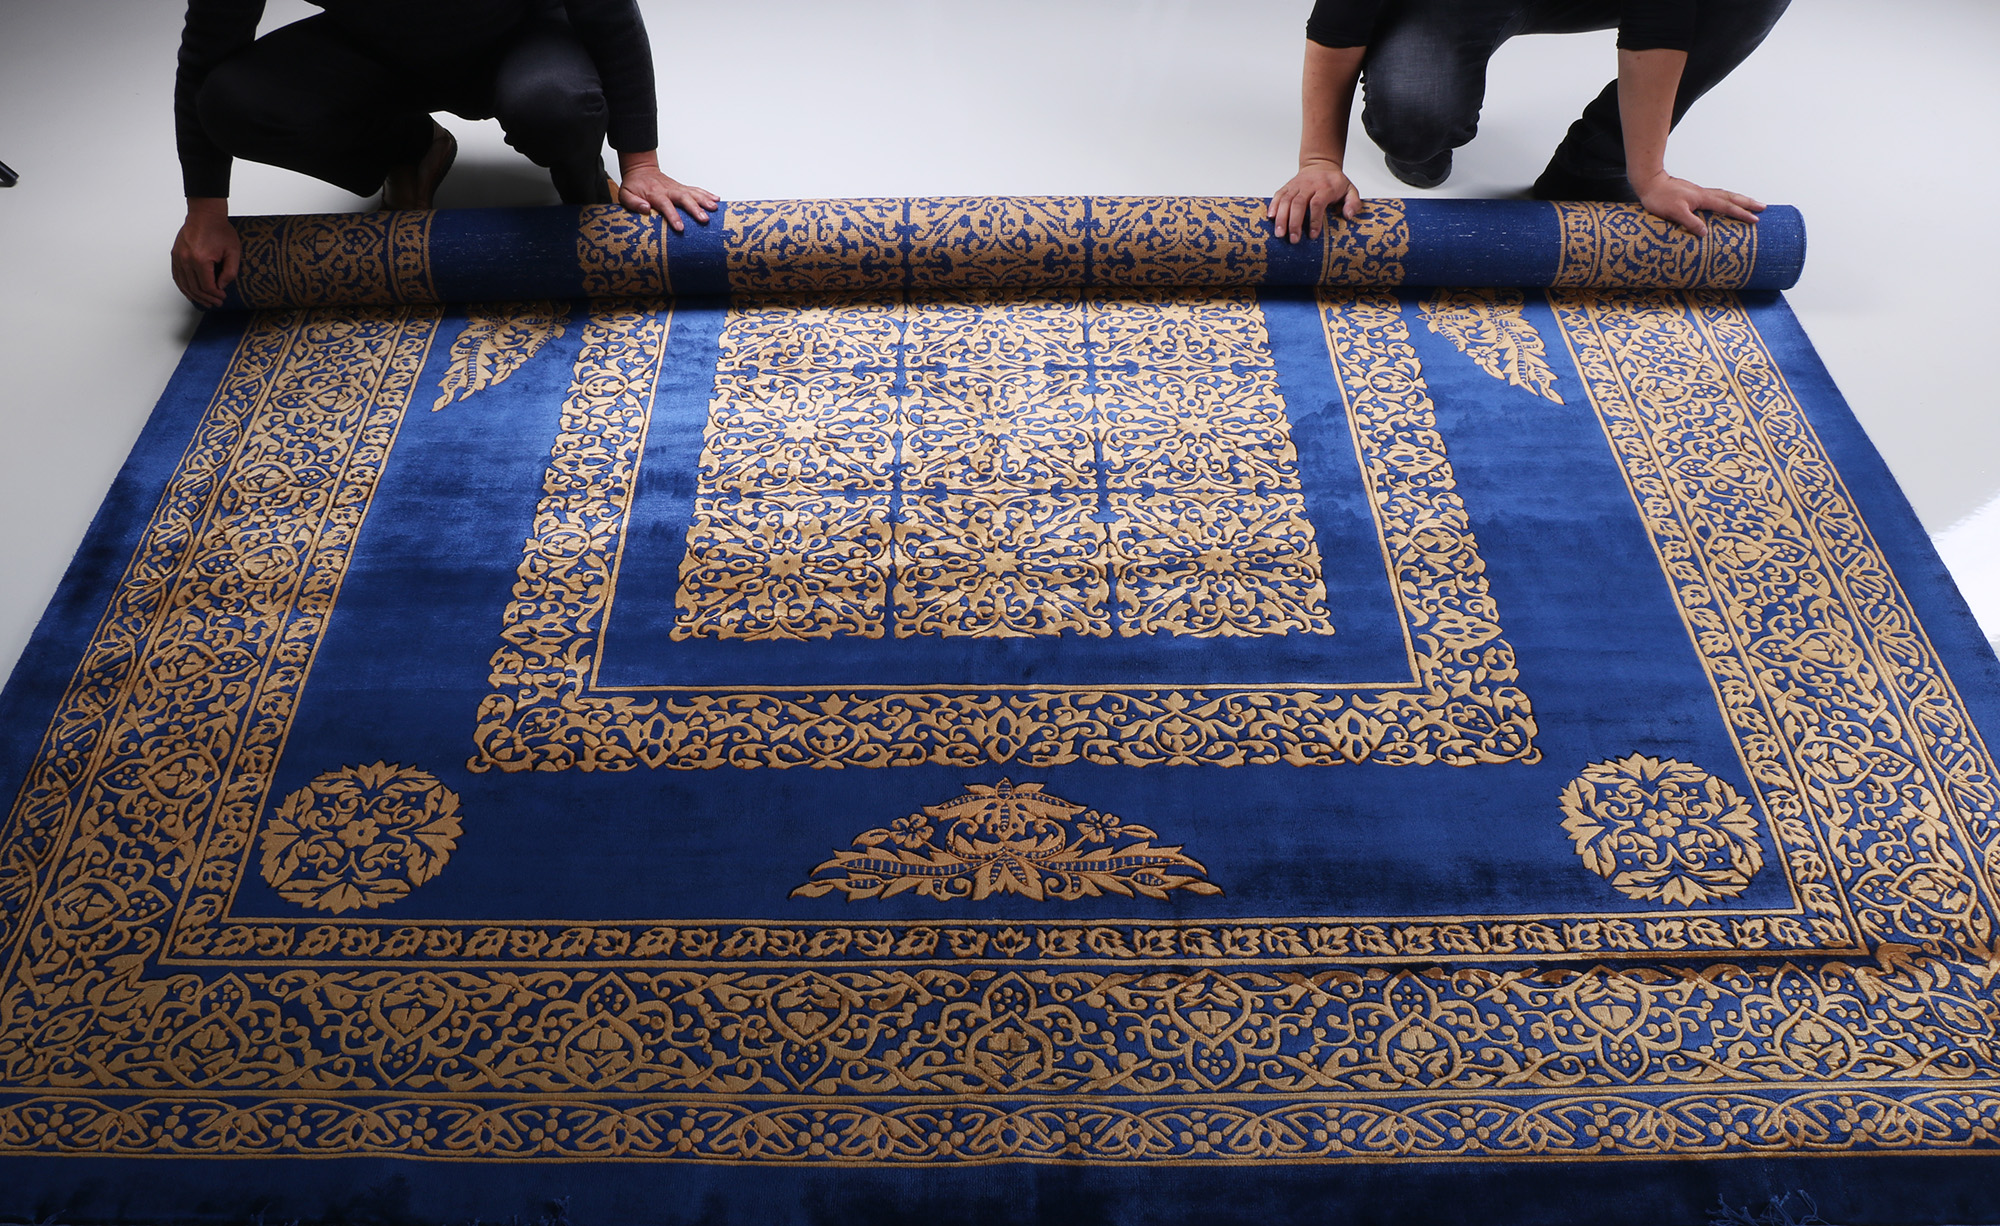 方寸之间的手工真丝地毯，可谓是家里一道不可忽视的靓丽风景